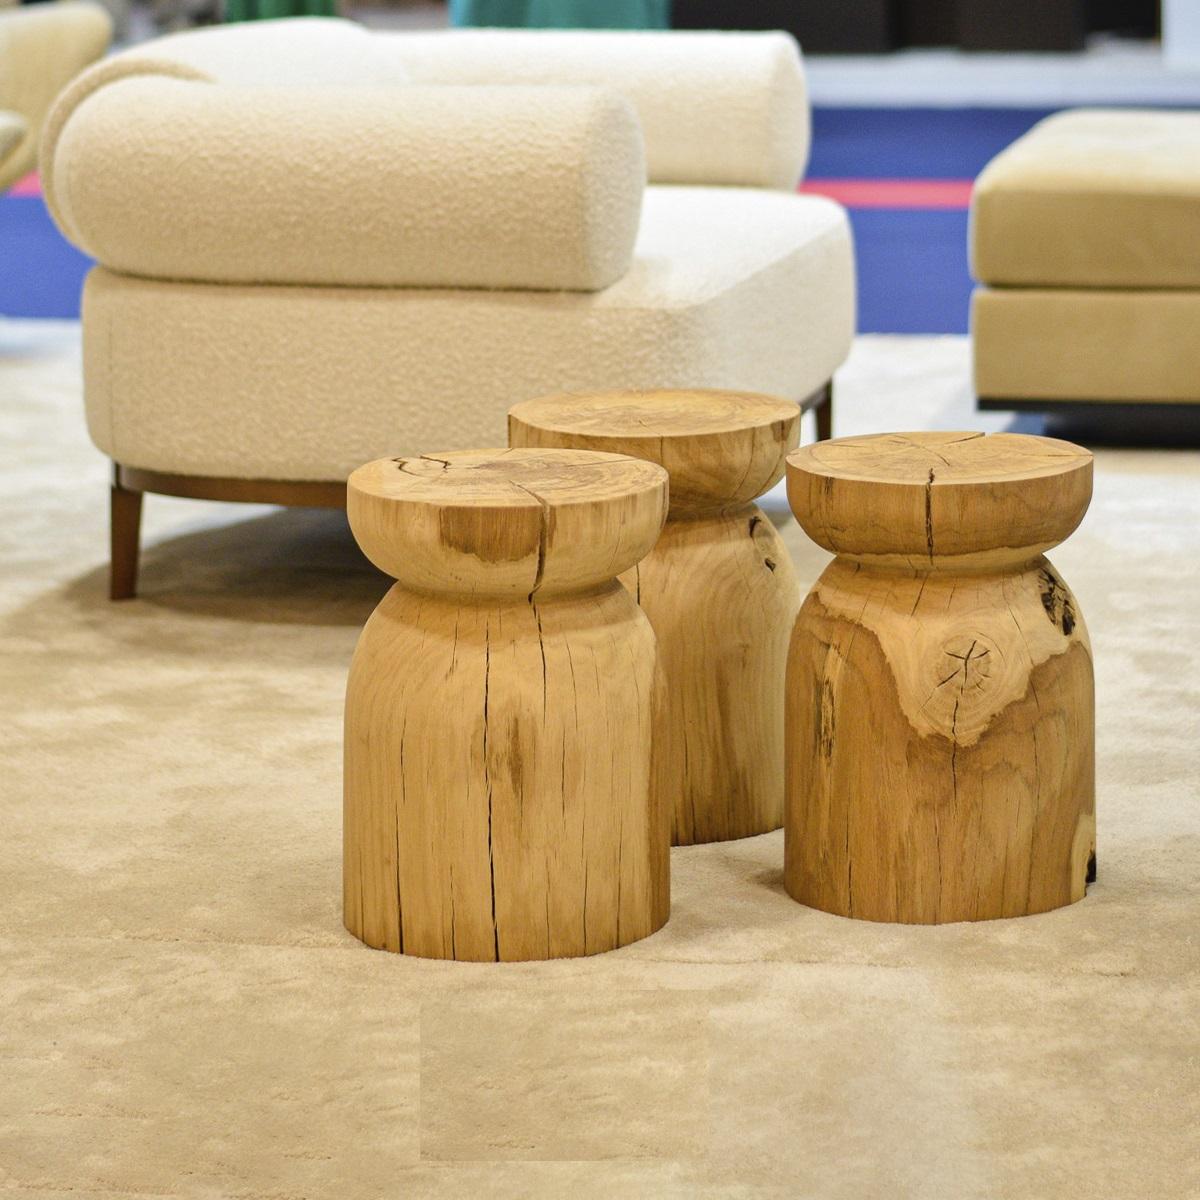 La table japonaise est une personnification du bouchon, perceptible dès les premières secondes. Le tabouret bas ou la table d'appoint est en bois. C'est un article de lignes pures, où les éléments naturels sont présents.
Dimensions : largeur 35 cm